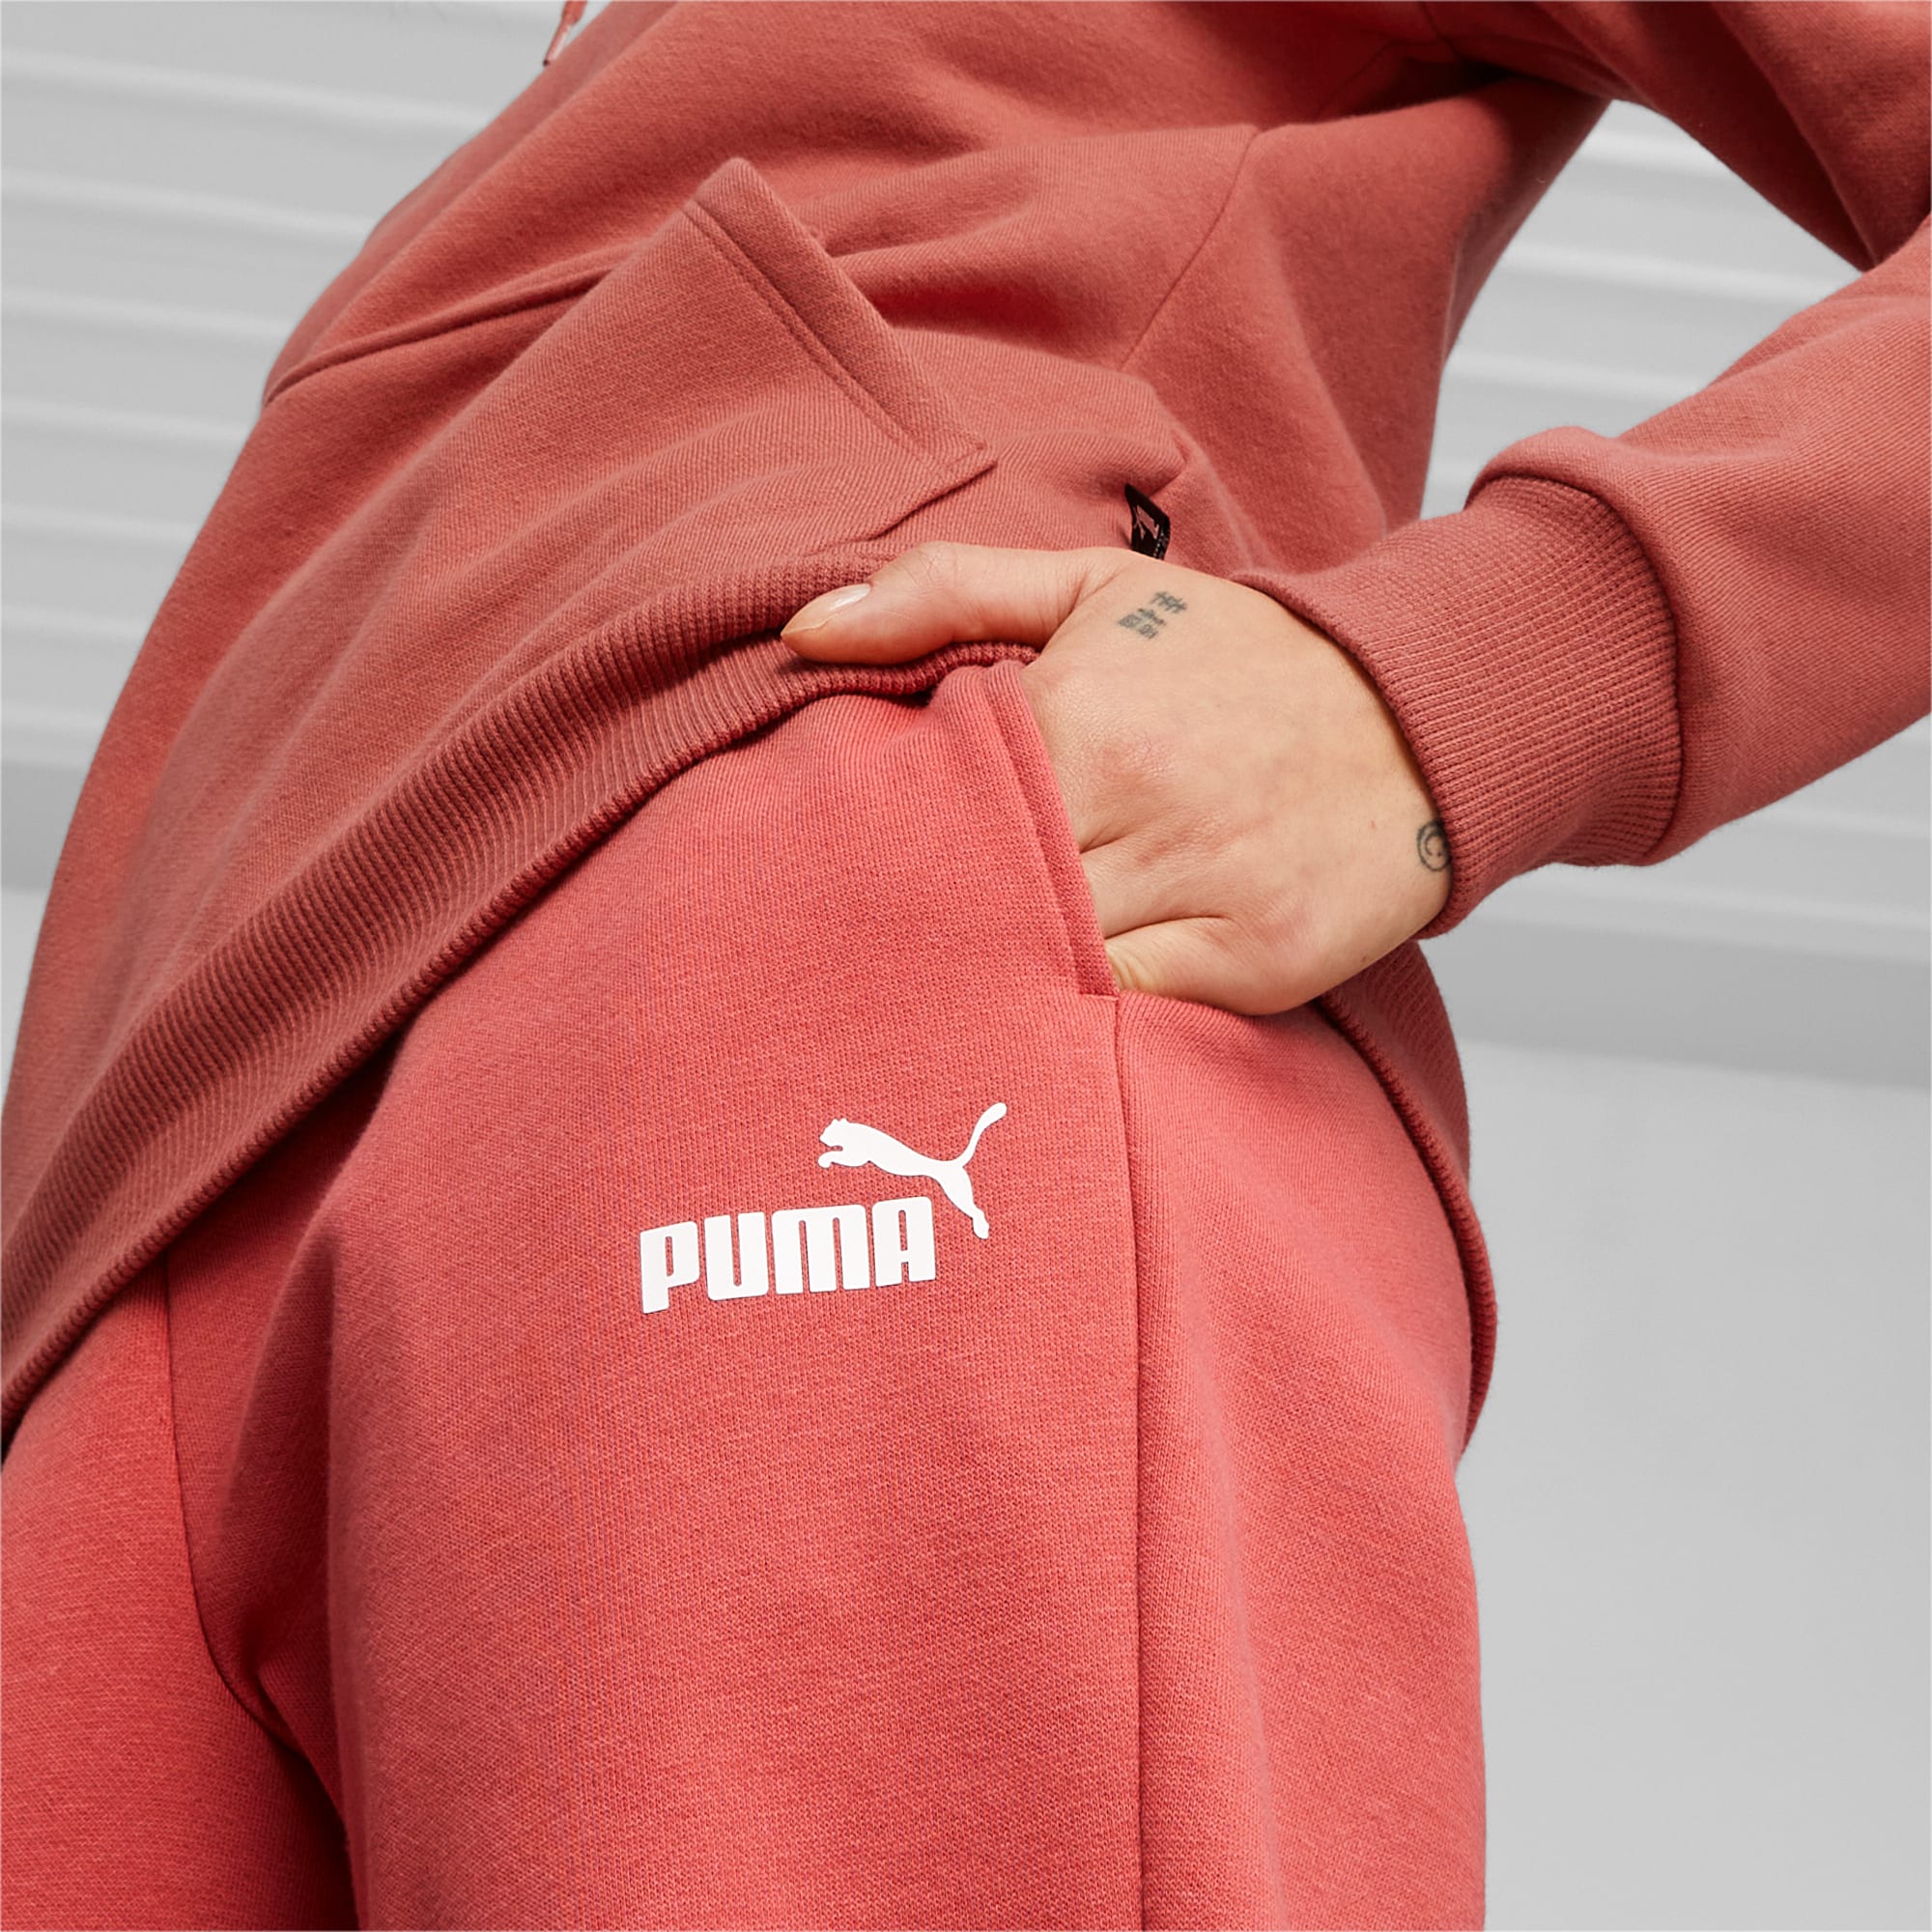 PUMA Essentials Damen-Jogginghose, Rot, Größe: M